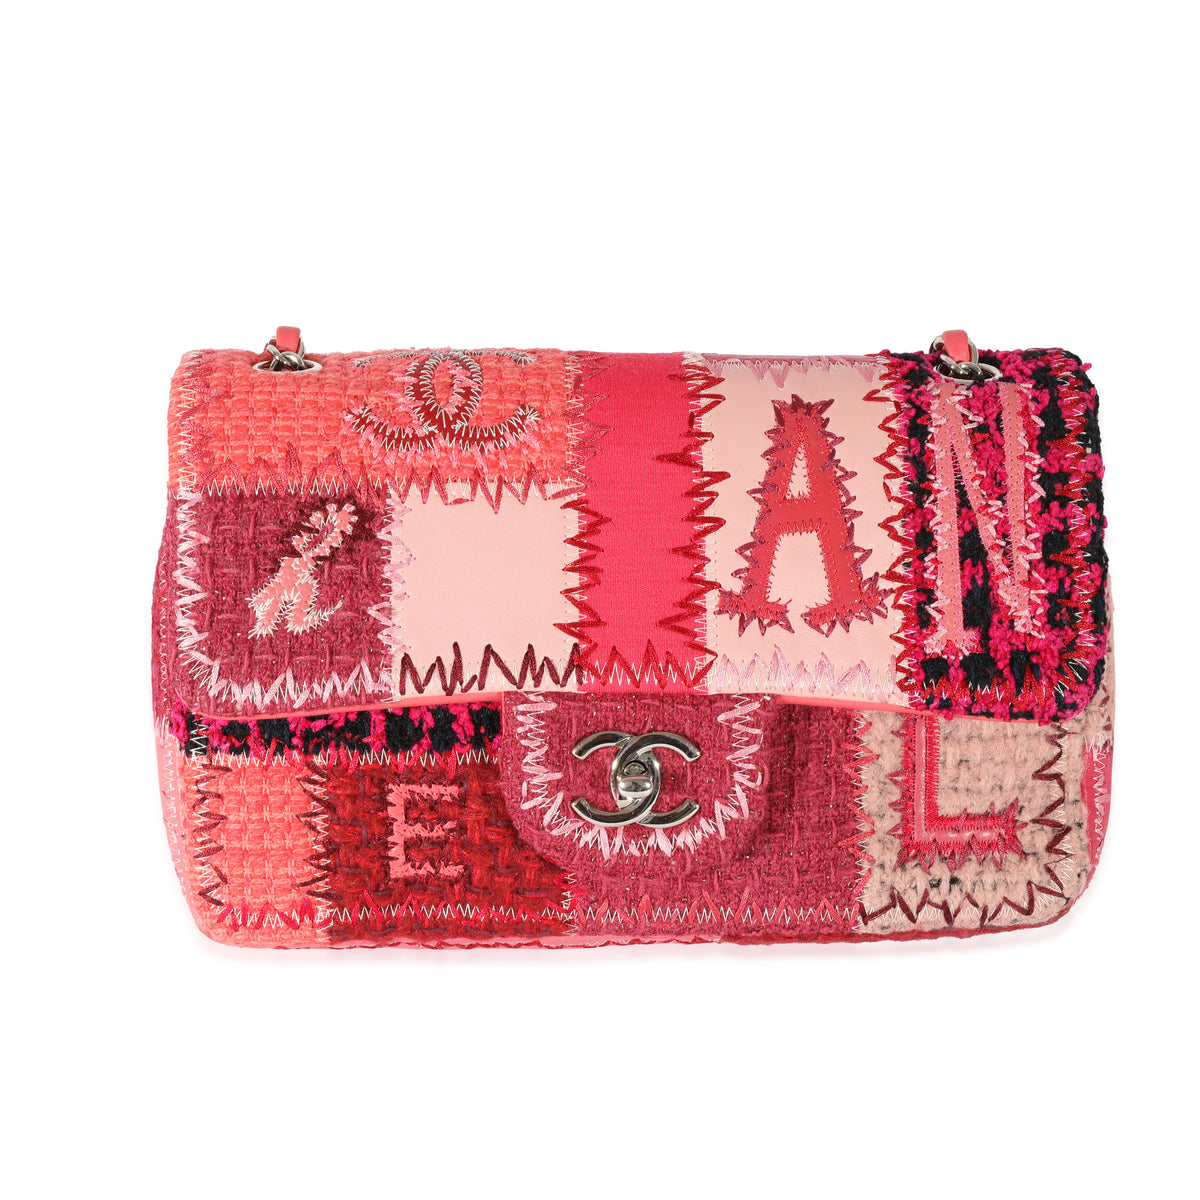 Chanel Red Medium Patchwork Classic Flap Bag, myGemma, SG